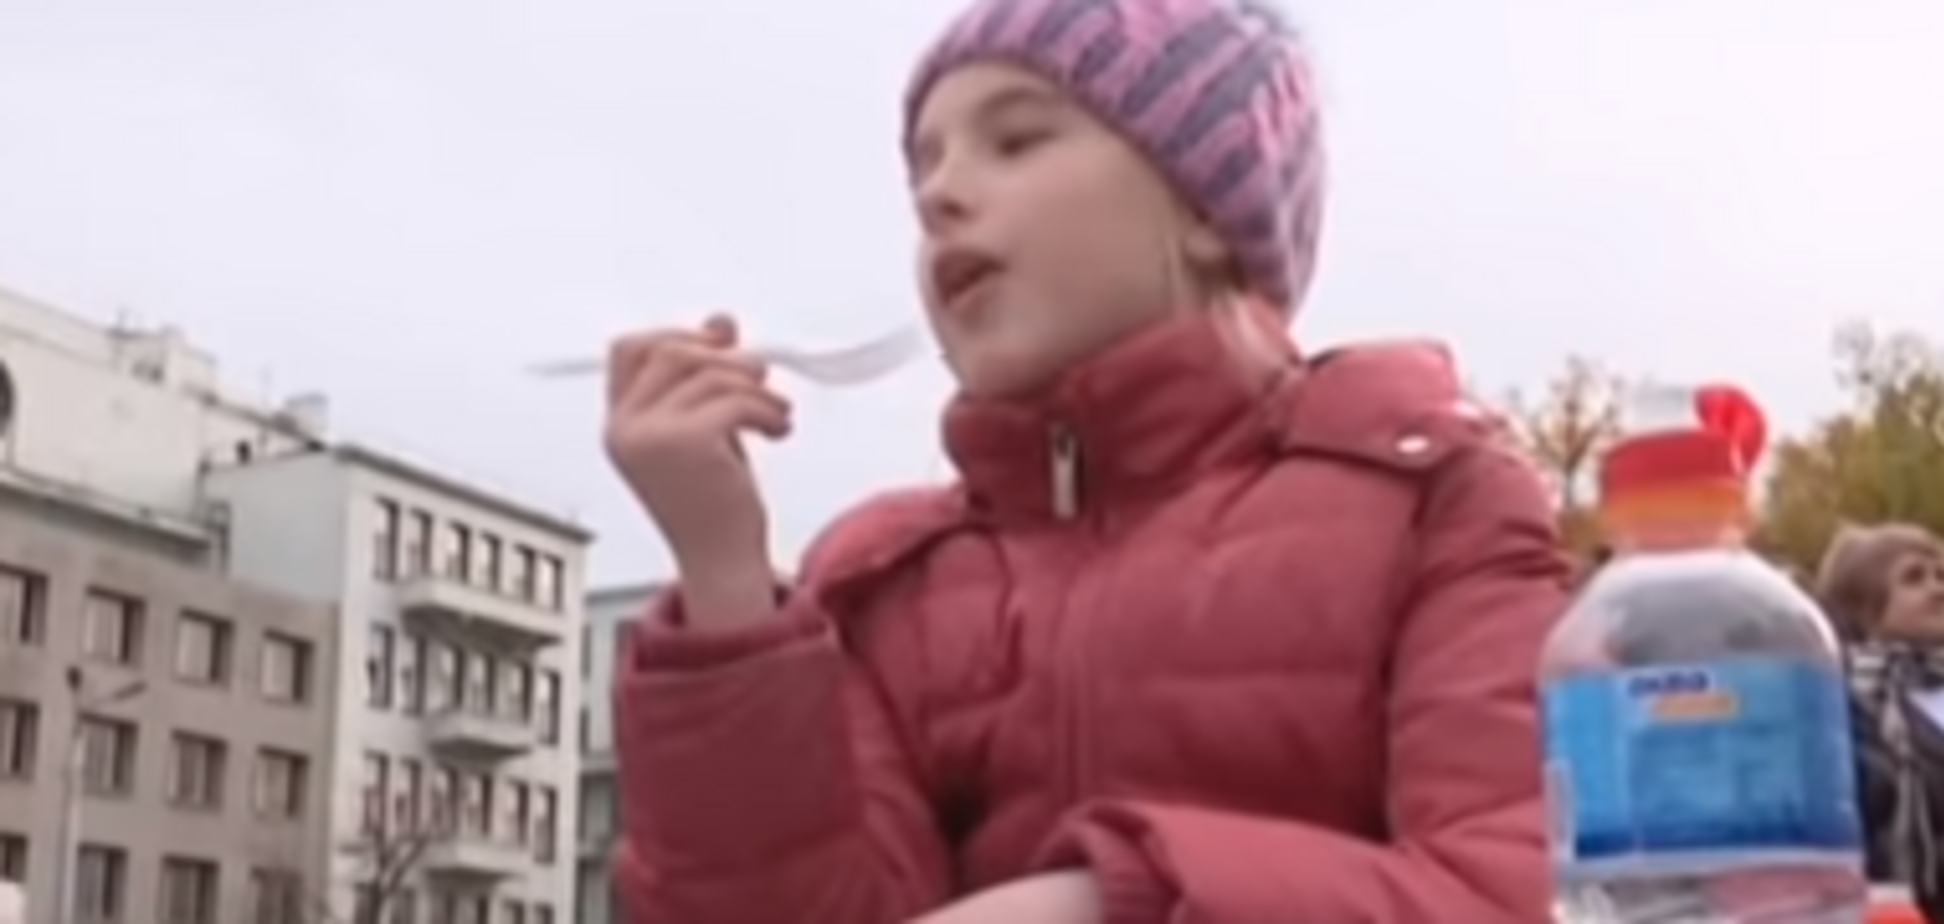  Скандал с тортом в Харькове: затравленная школьница сделала смелое заявление